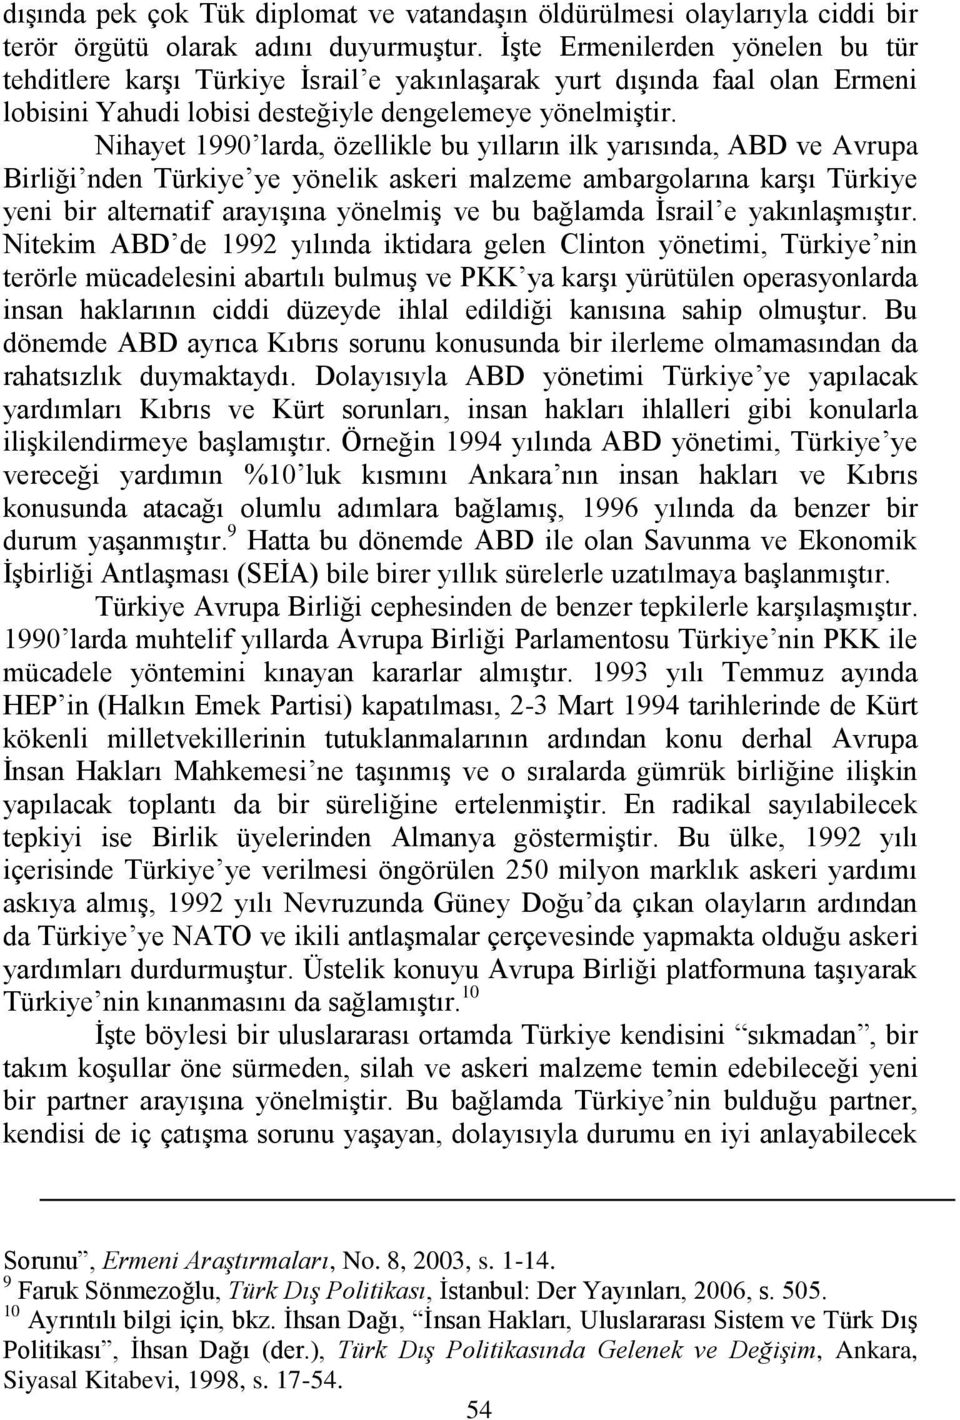 Nihayet 1990 larda, özellikle bu yılların ilk yarısında, ABD ve Avrupa Birliği nden Türkiye ye yönelik askeri malzeme ambargolarına karģı Türkiye yeni bir alternatif arayıģına yönelmiģ ve bu bağlamda